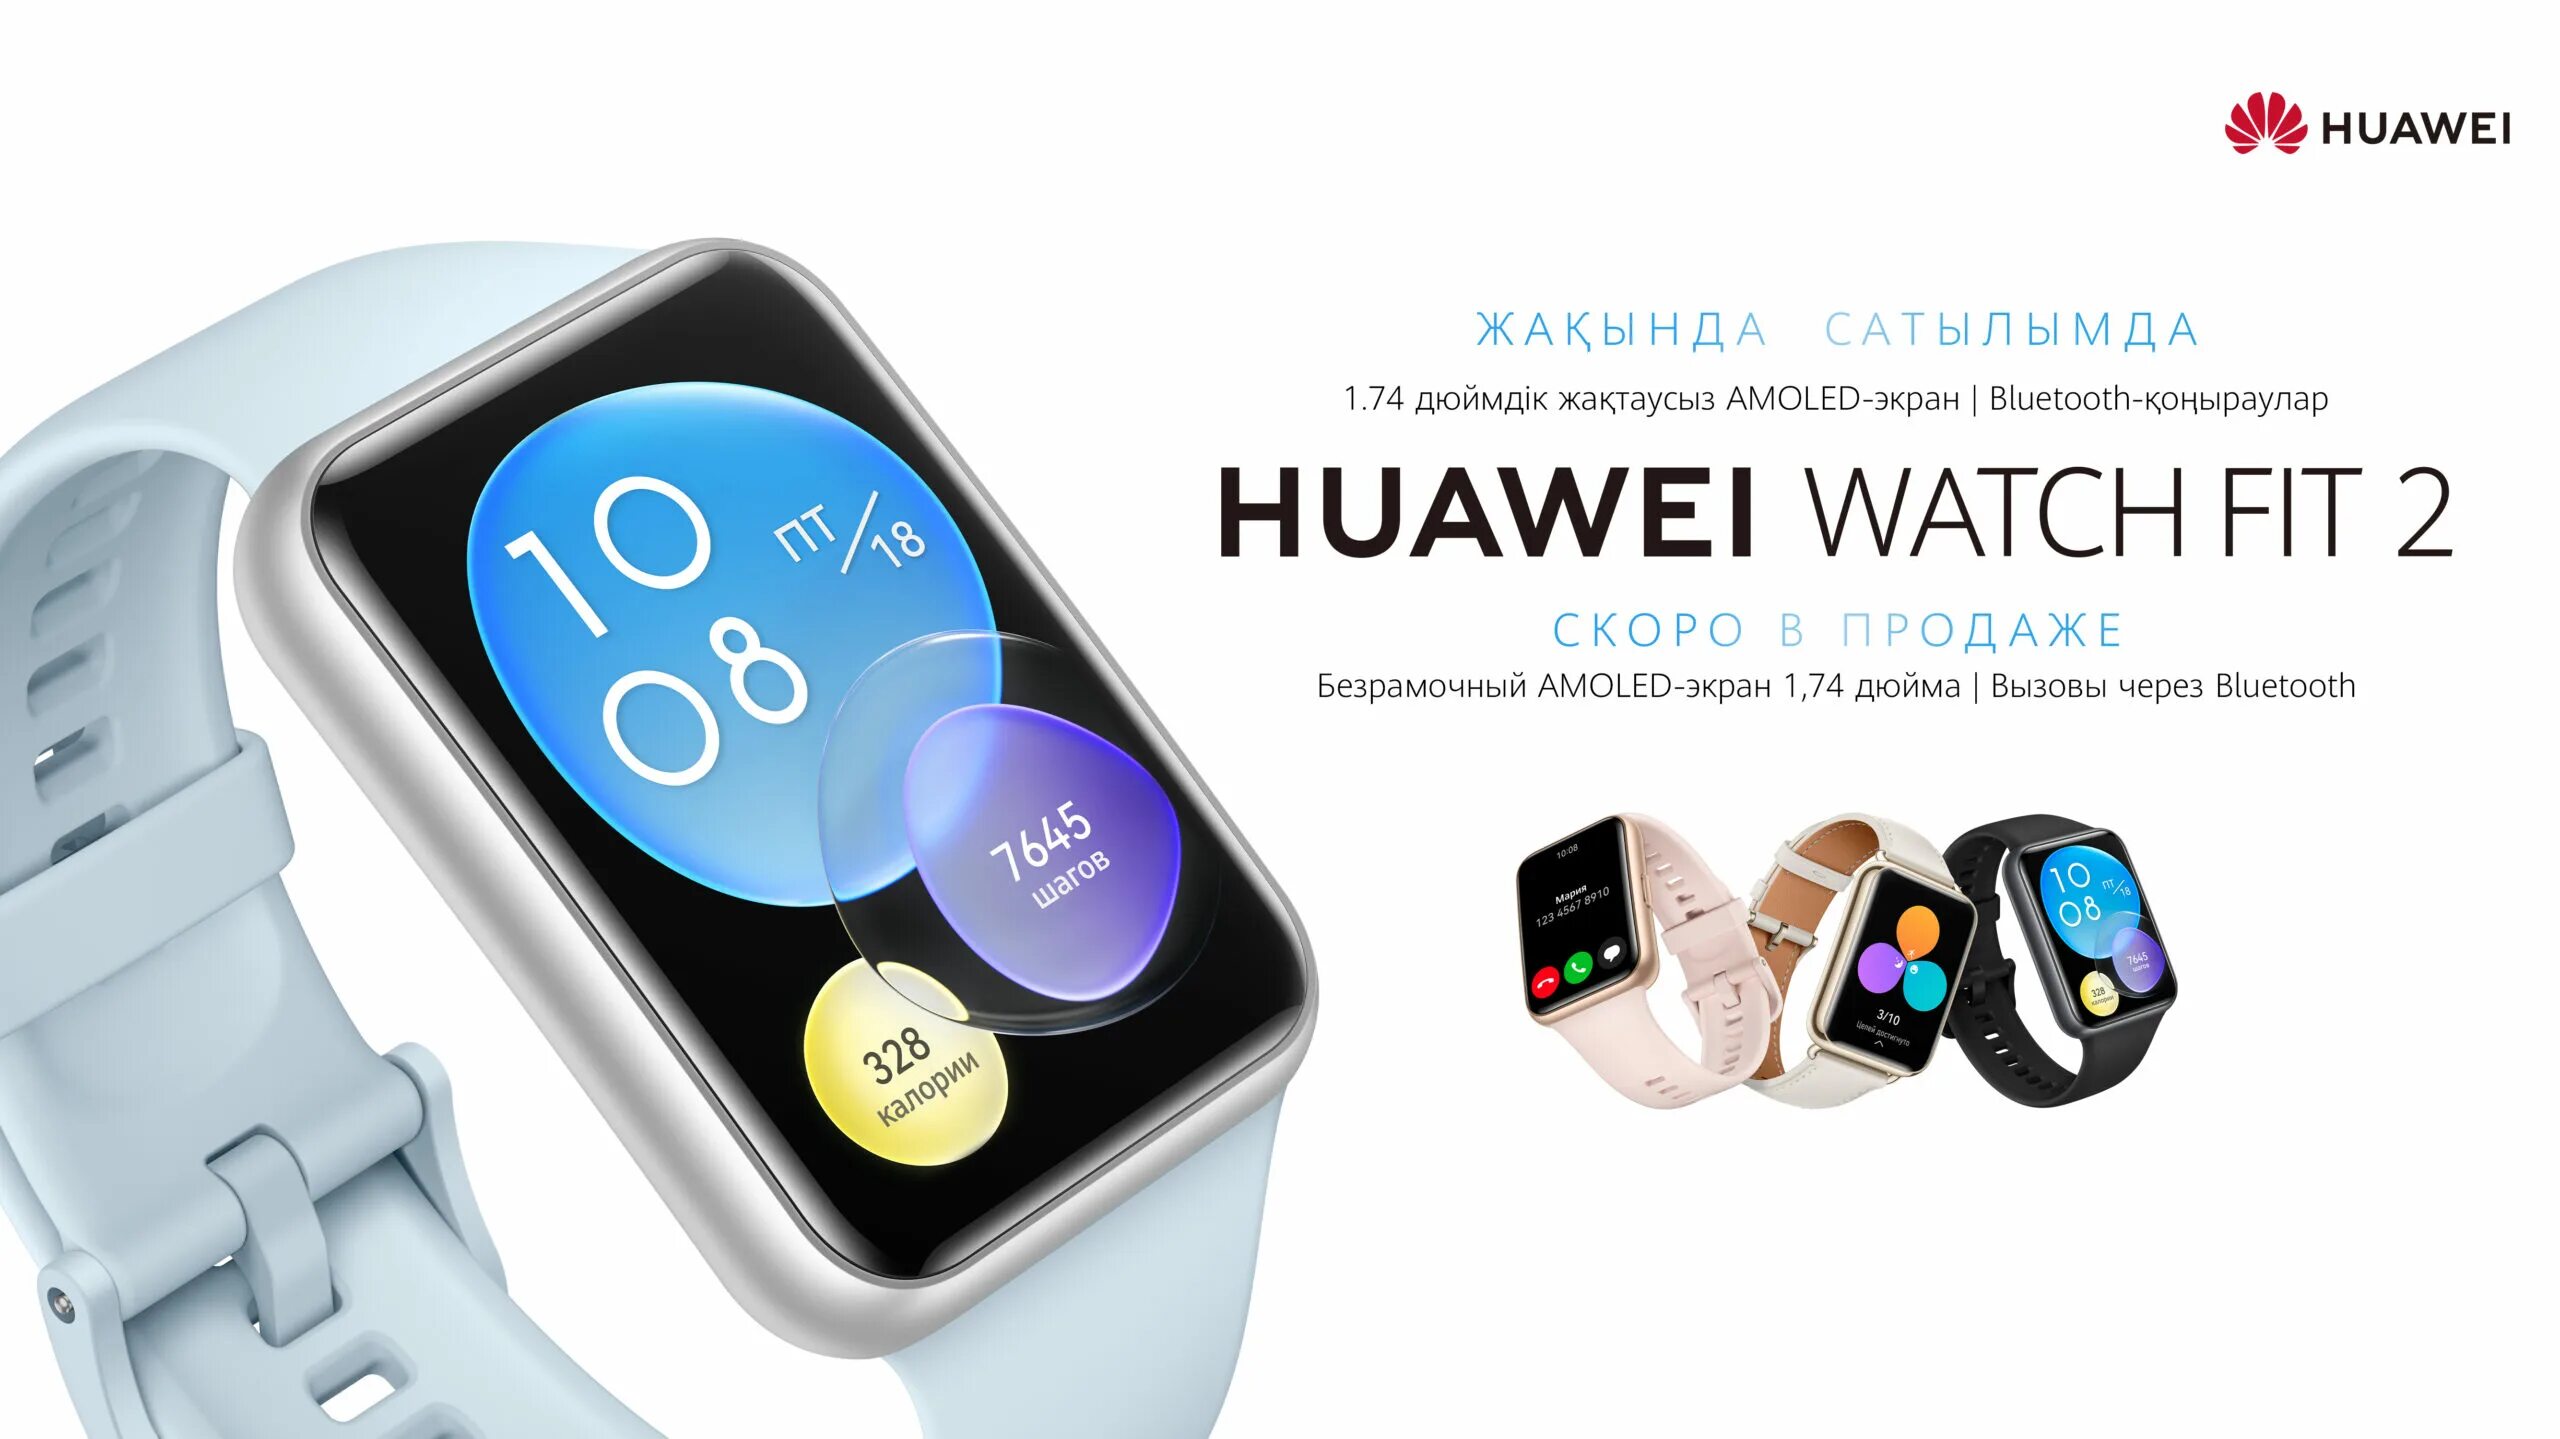 Хуавей вотч фит 2. Часы Хуавей фит 2. Хуавей вотч фит 3. Huawei умные часы Fit 2 Active Edition. Huawei fit 2 сравнение huawei fit